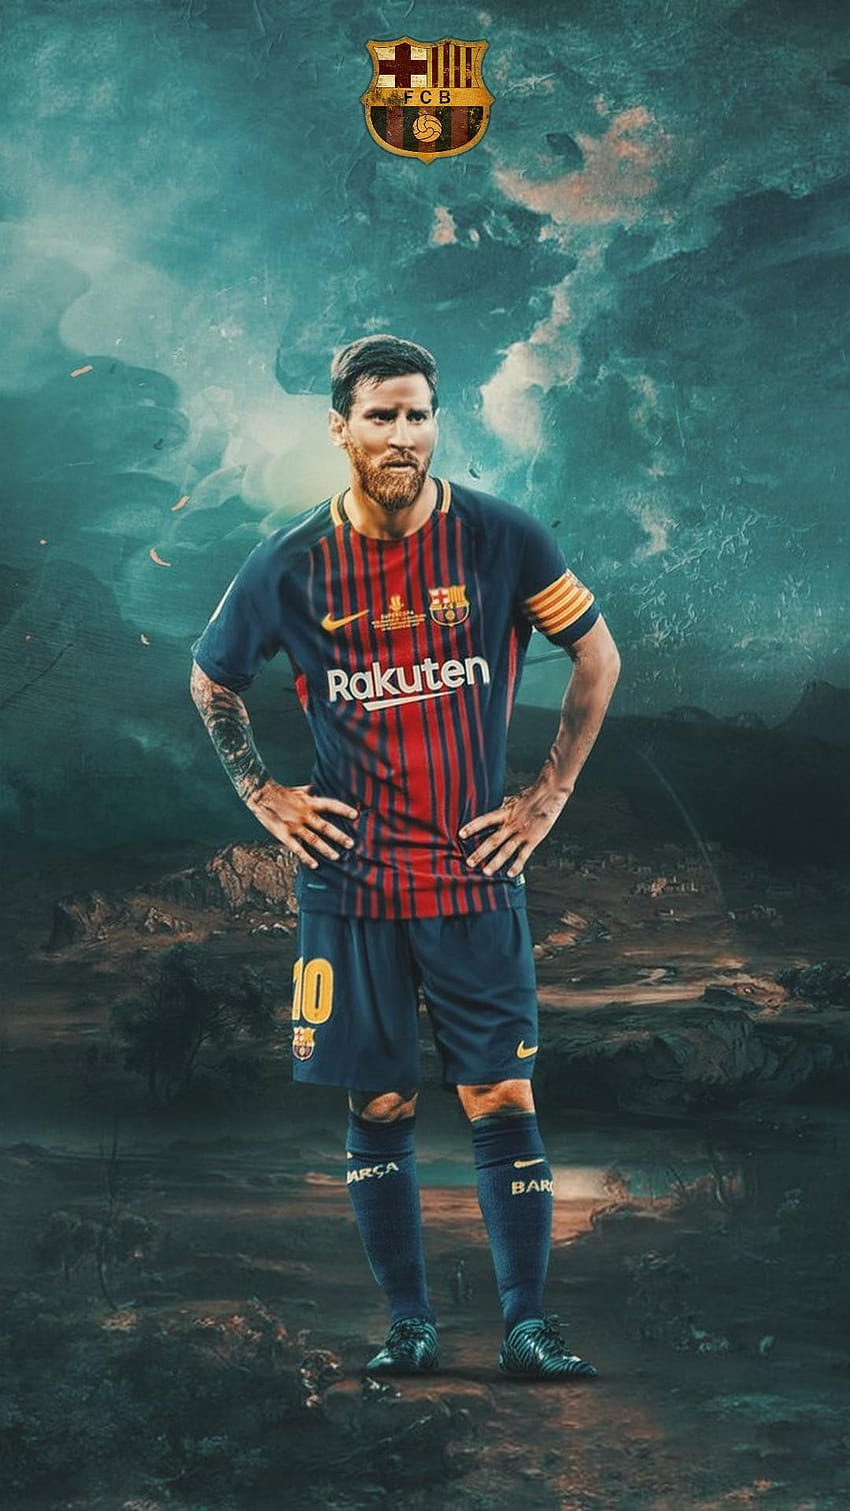 Năm 2019 là một năm đầy khó khăn đối với Lionel Messi và Barcelona, nhưng không thể phủ nhận được sức hút của họ. Hình ảnh liên quan đến từ khóa \